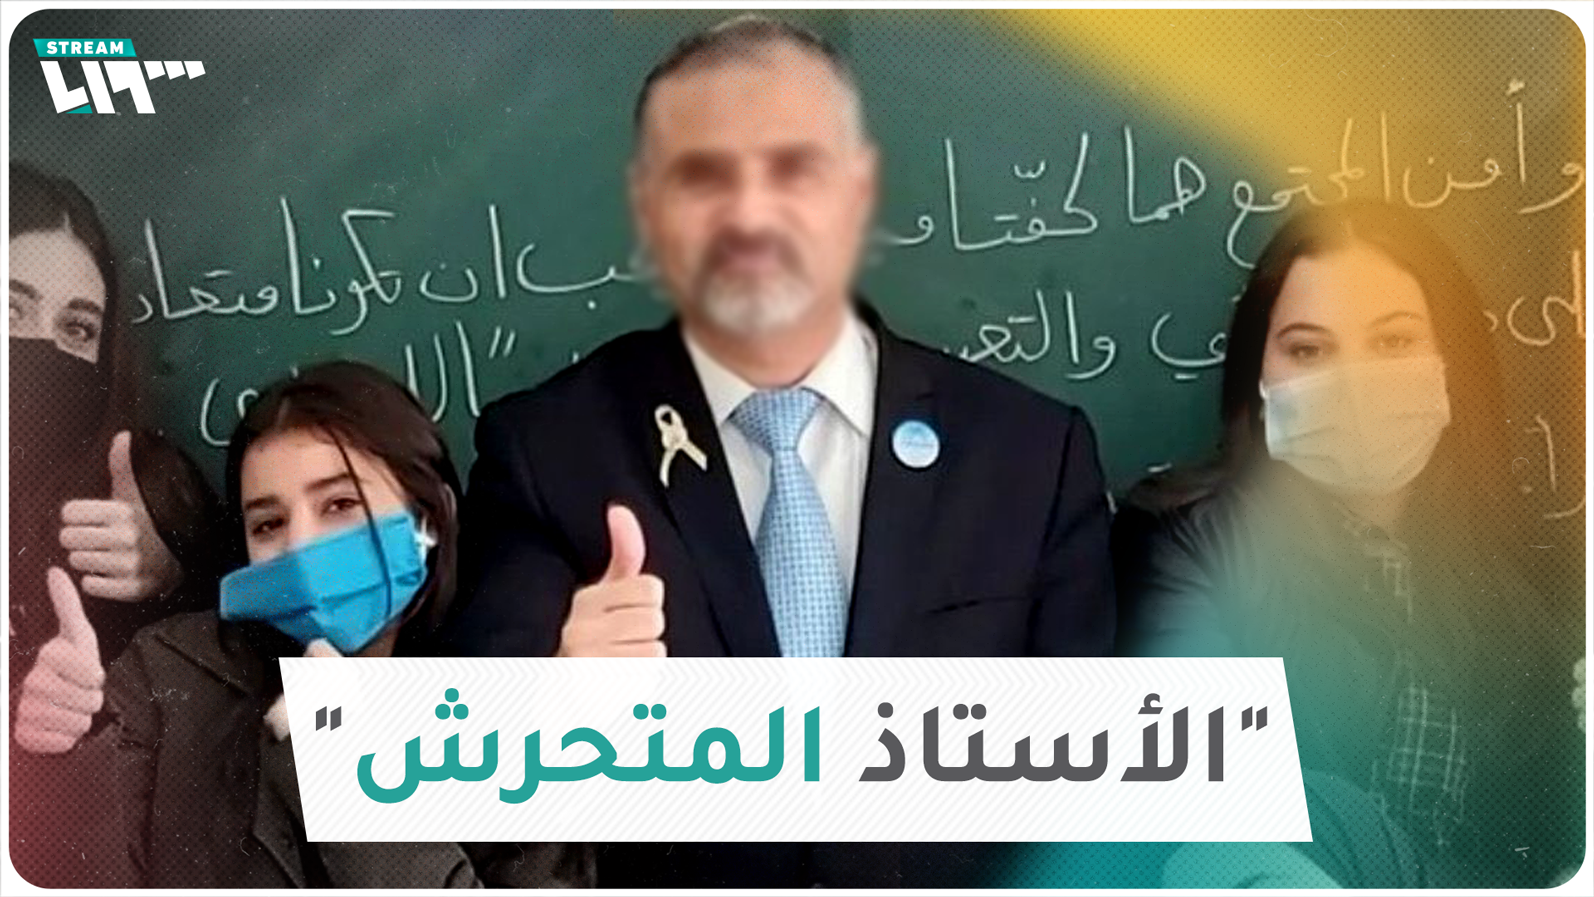 "الأستاذ المتحرش" يثير غضب لبنانيين وطالبات يروينَ قصصهن